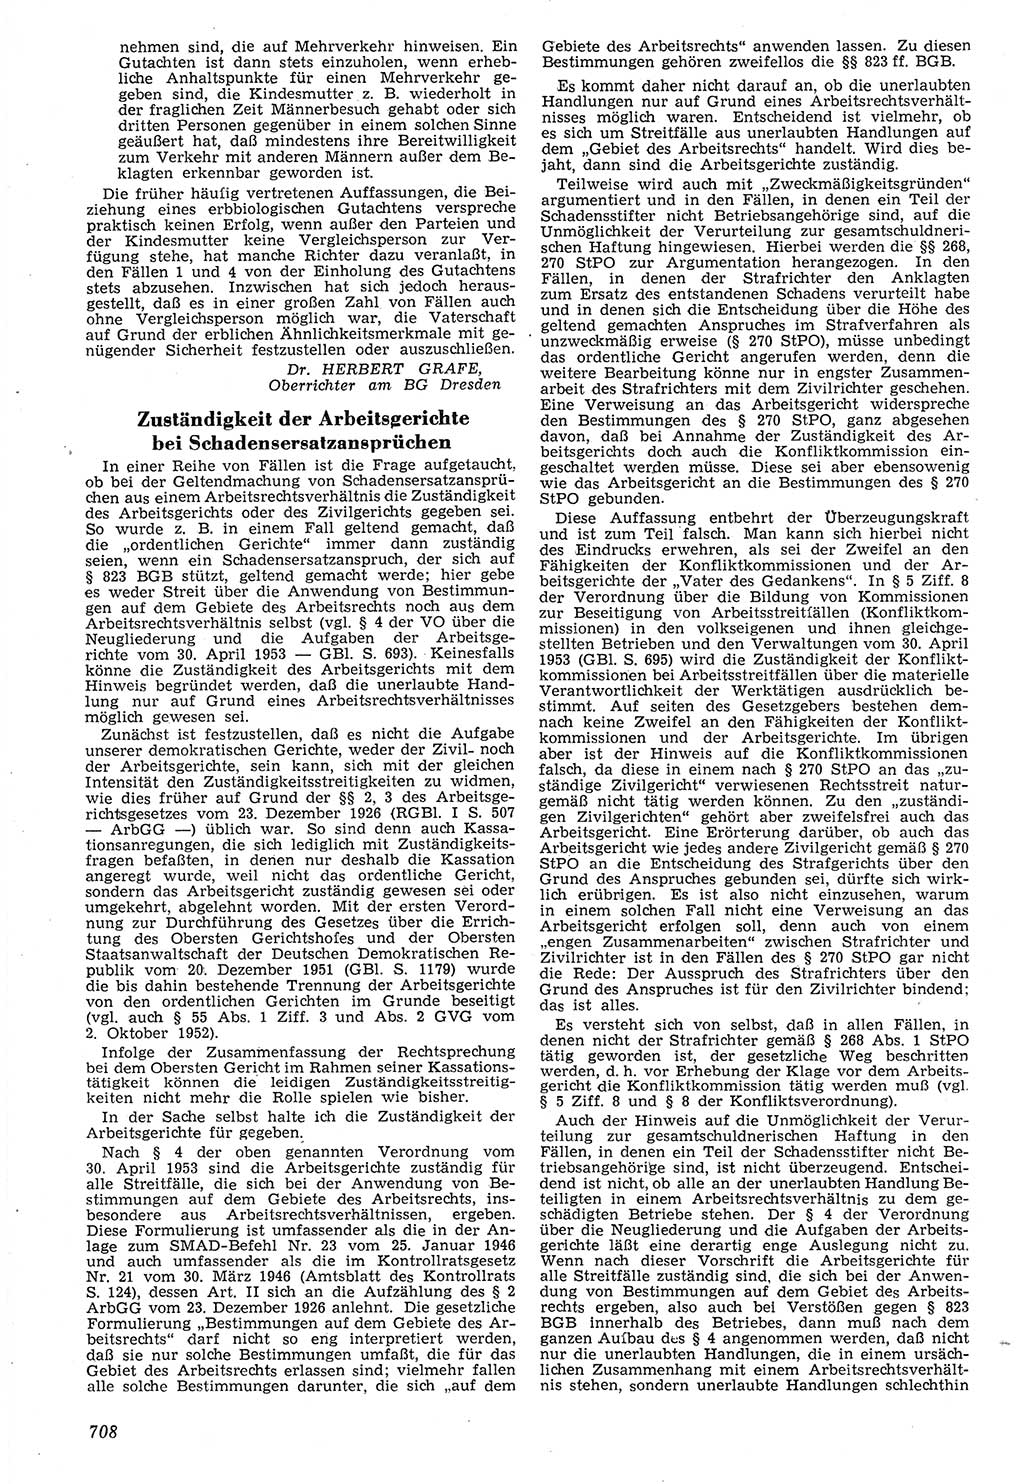 Neue Justiz (NJ), Zeitschrift für Recht und Rechtswissenschaft [Deutsche Demokratische Republik (DDR)], 7. Jahrgang 1953, Seite 708 (NJ DDR 1953, S. 708)